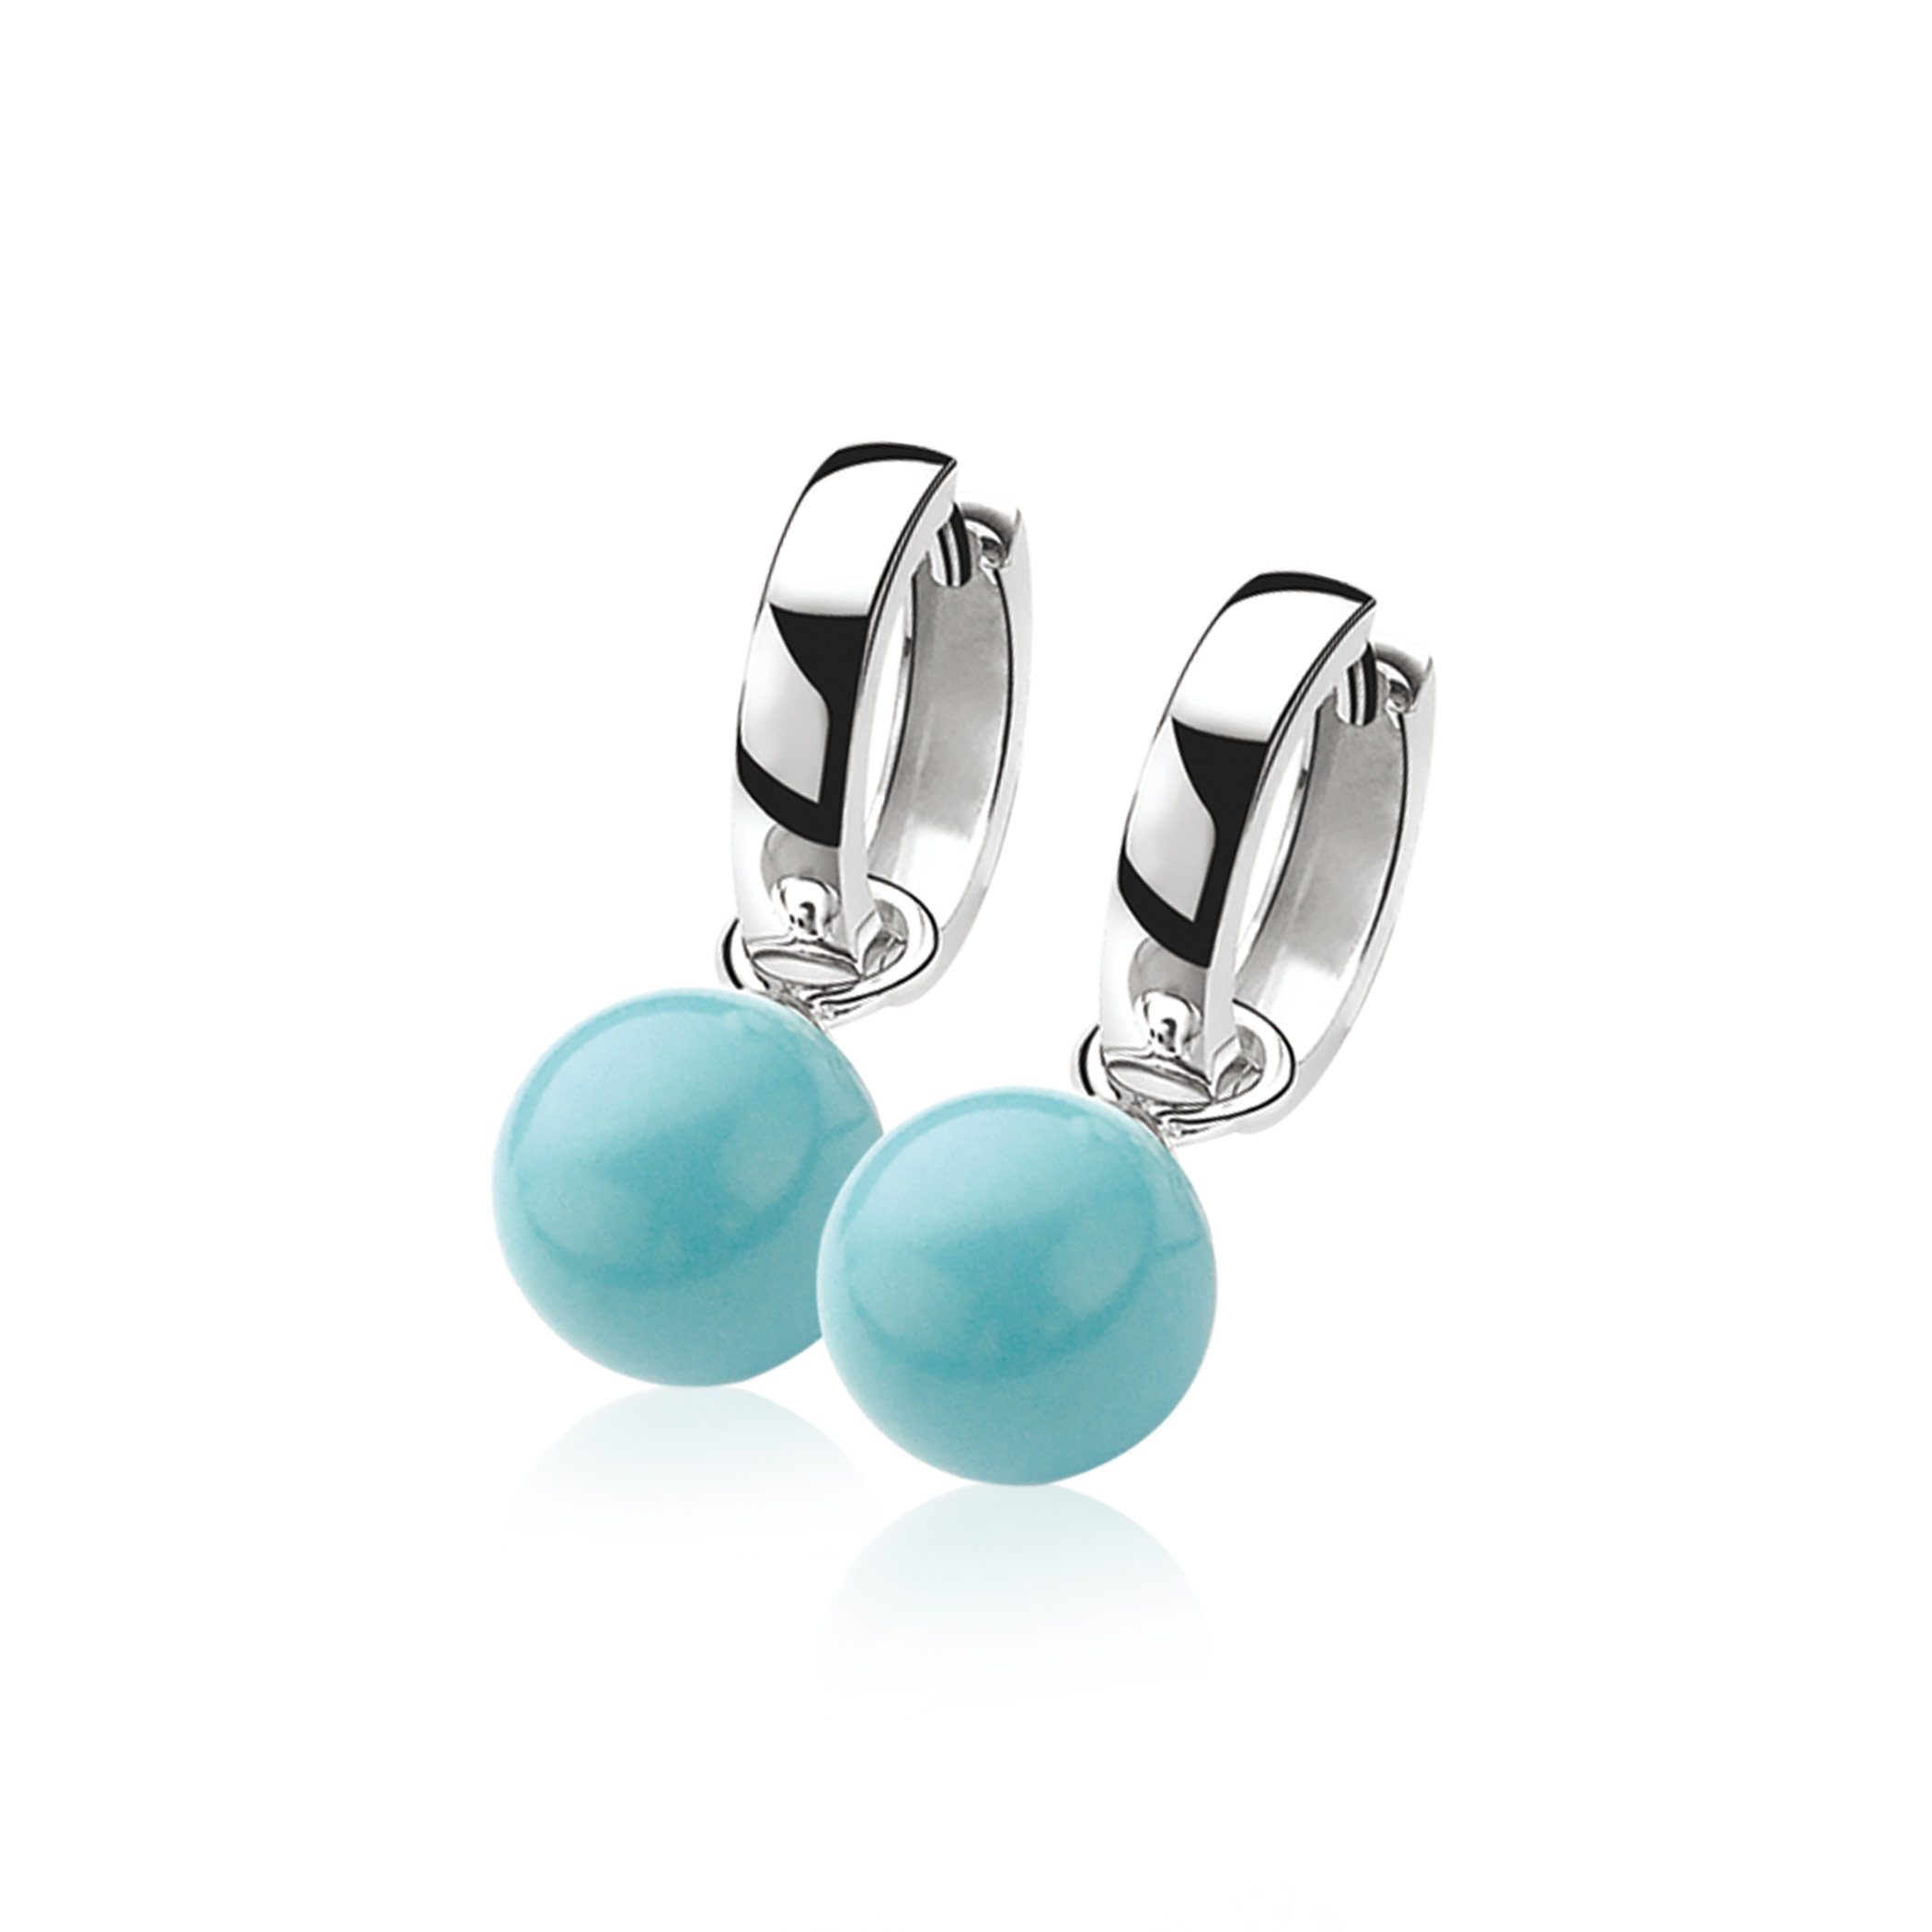 10mm ZINZI Sterling Silver Earrings Pendants Pearl Turquoise ZICH266T (excl. hoop earrings)